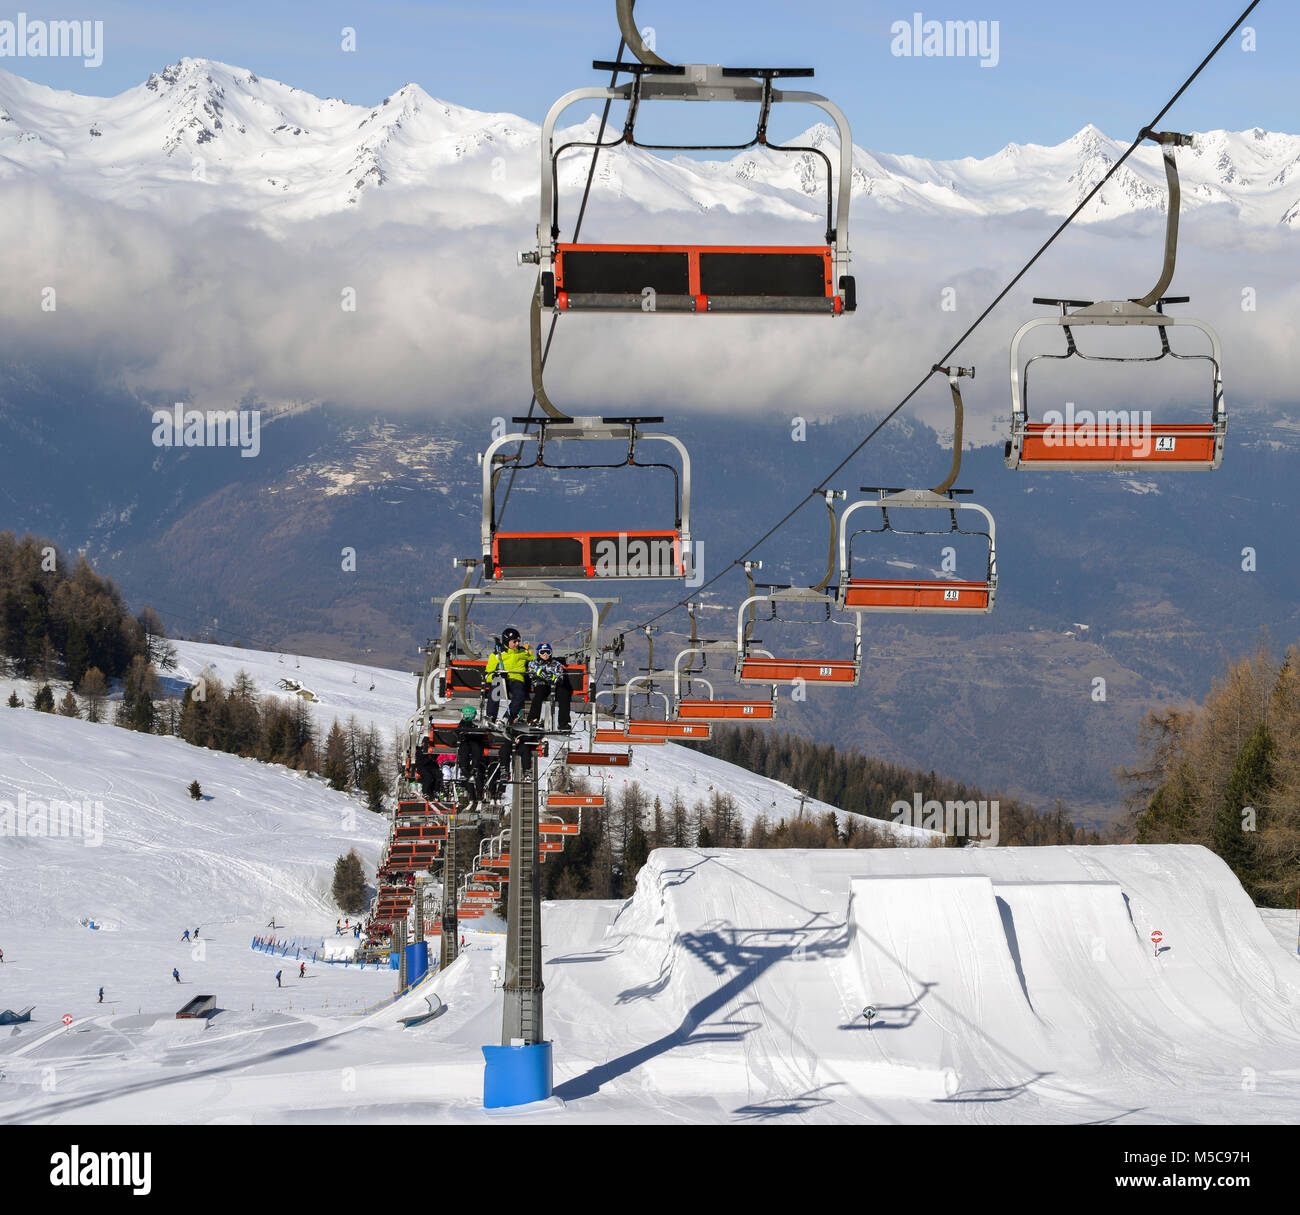 Pila, Aosta, Italien - Feb 19, 2018: Luftaufnahme der norditalienischen Stadt Aosta und Umgebung Valle d'Aosta von Pila Ski Resort Stockfoto